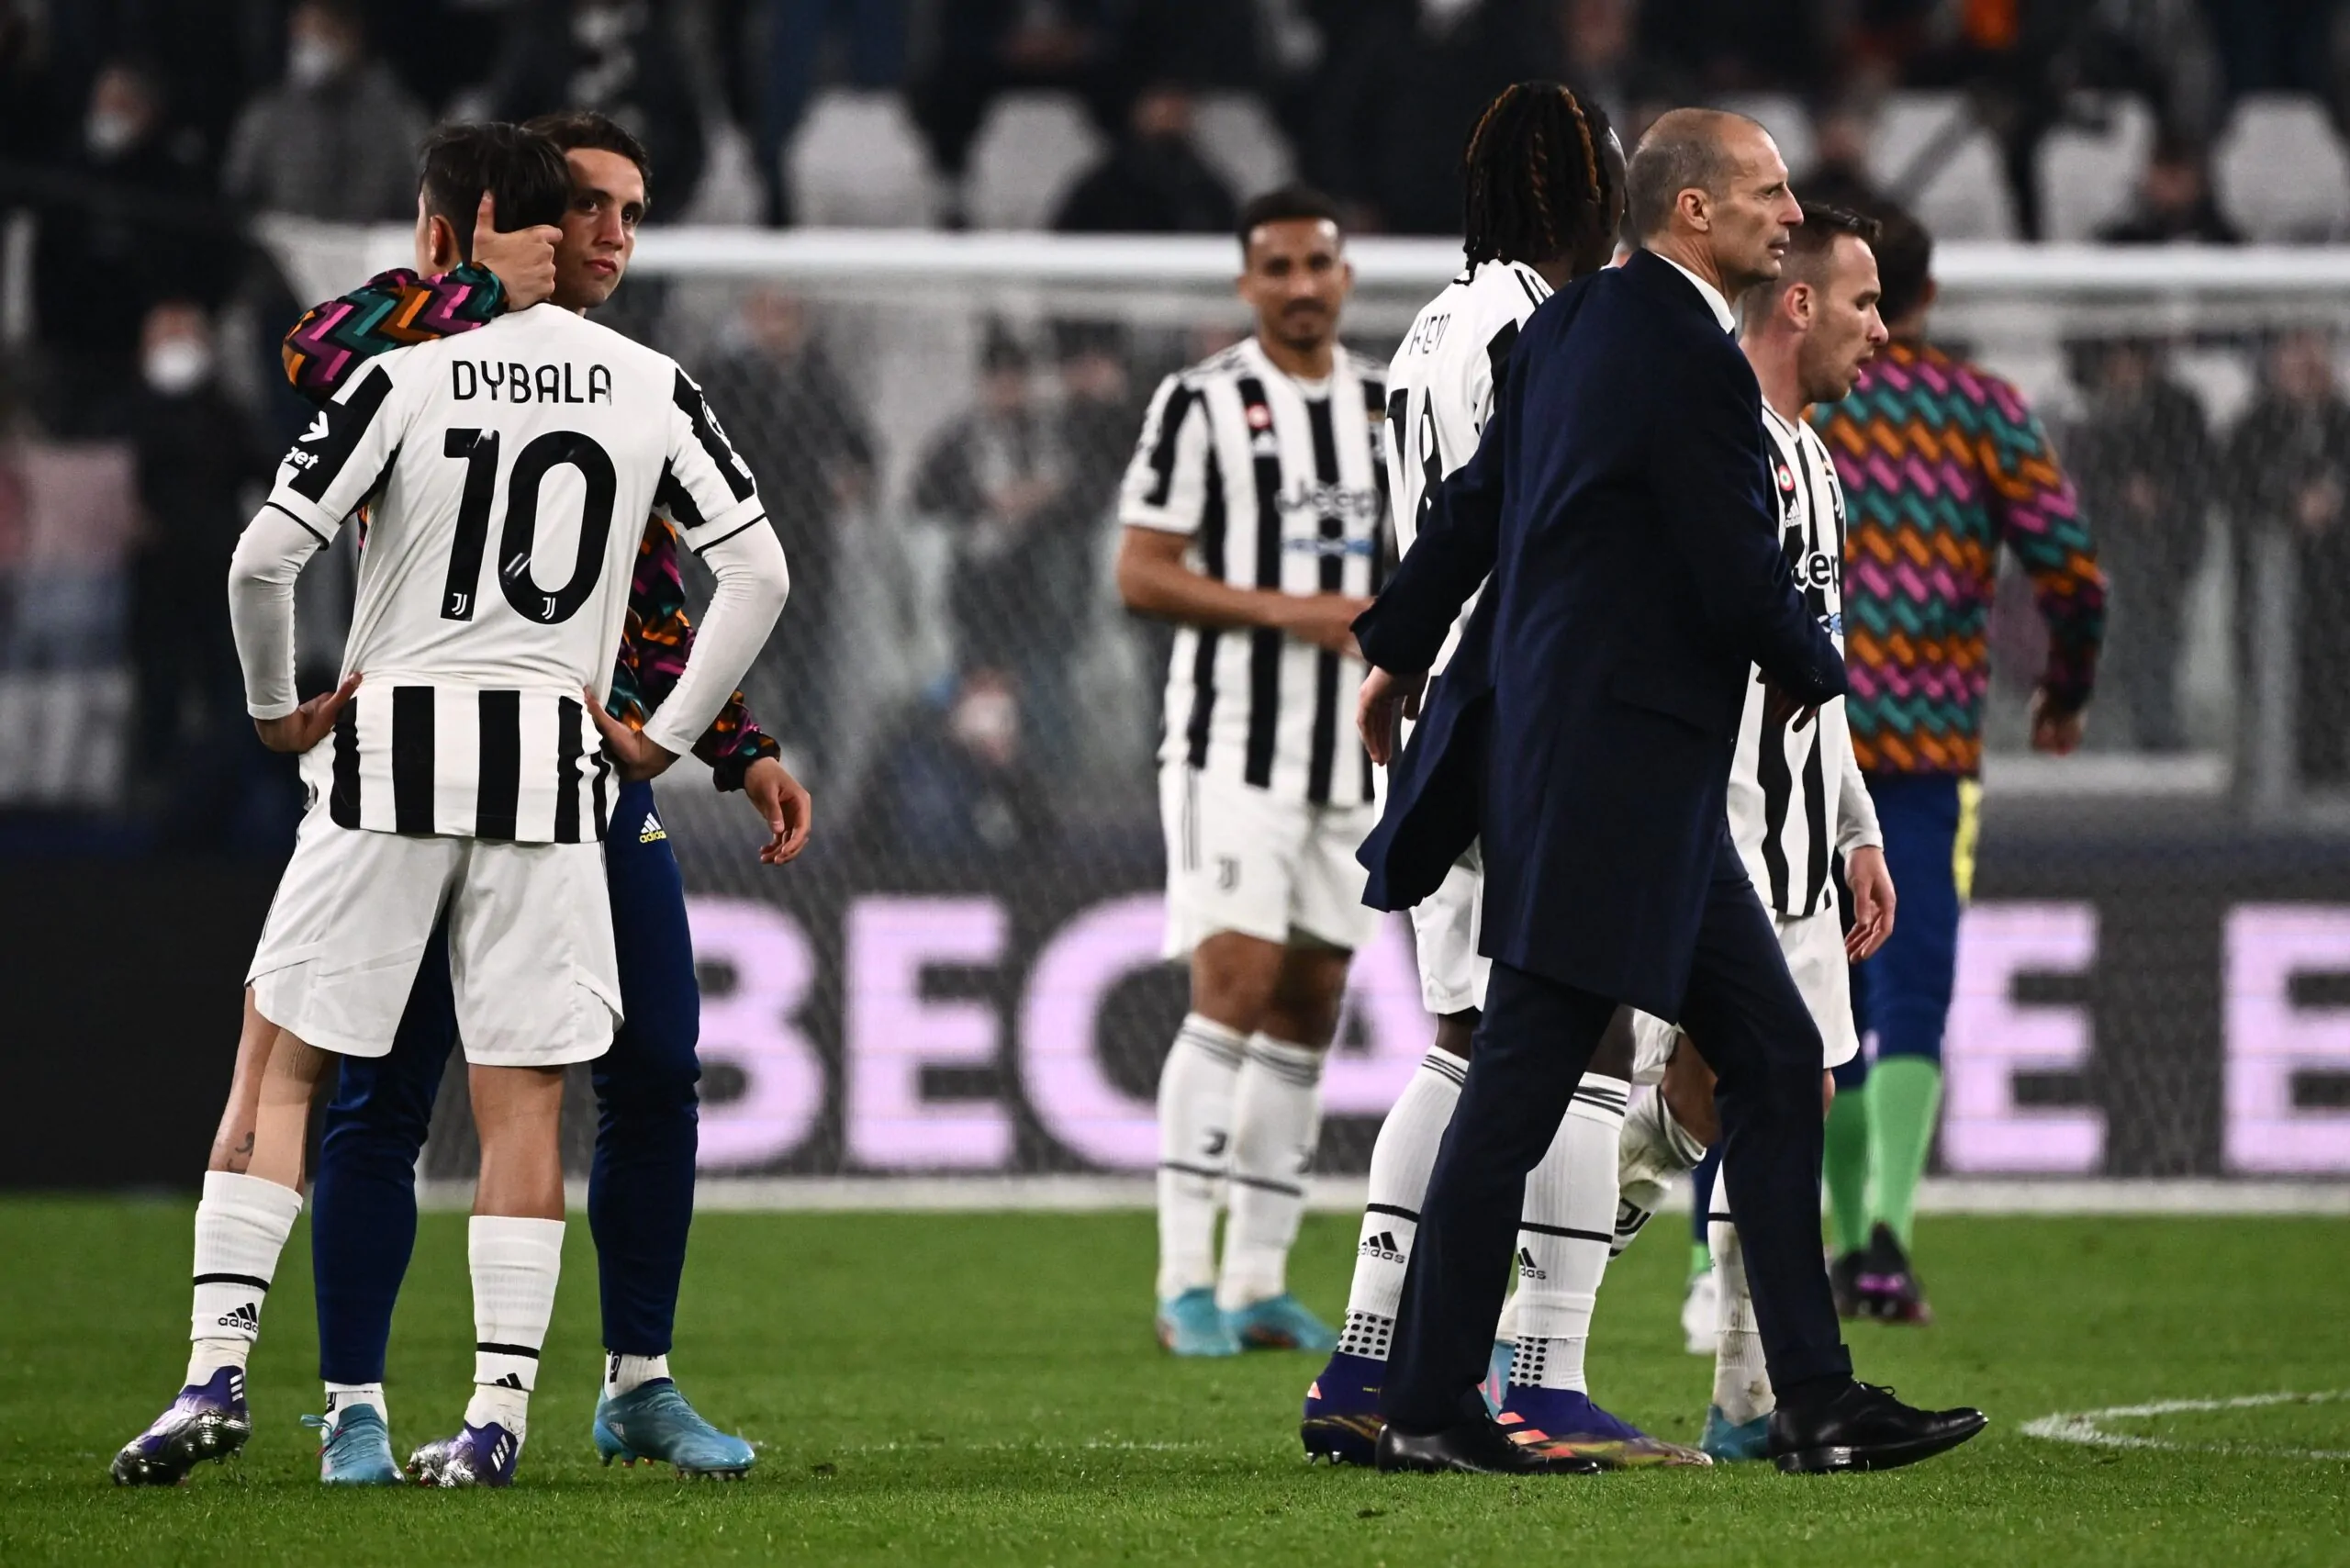 Bufera in casa Juventus, lite tra Allegri e un giocatore: la situazione